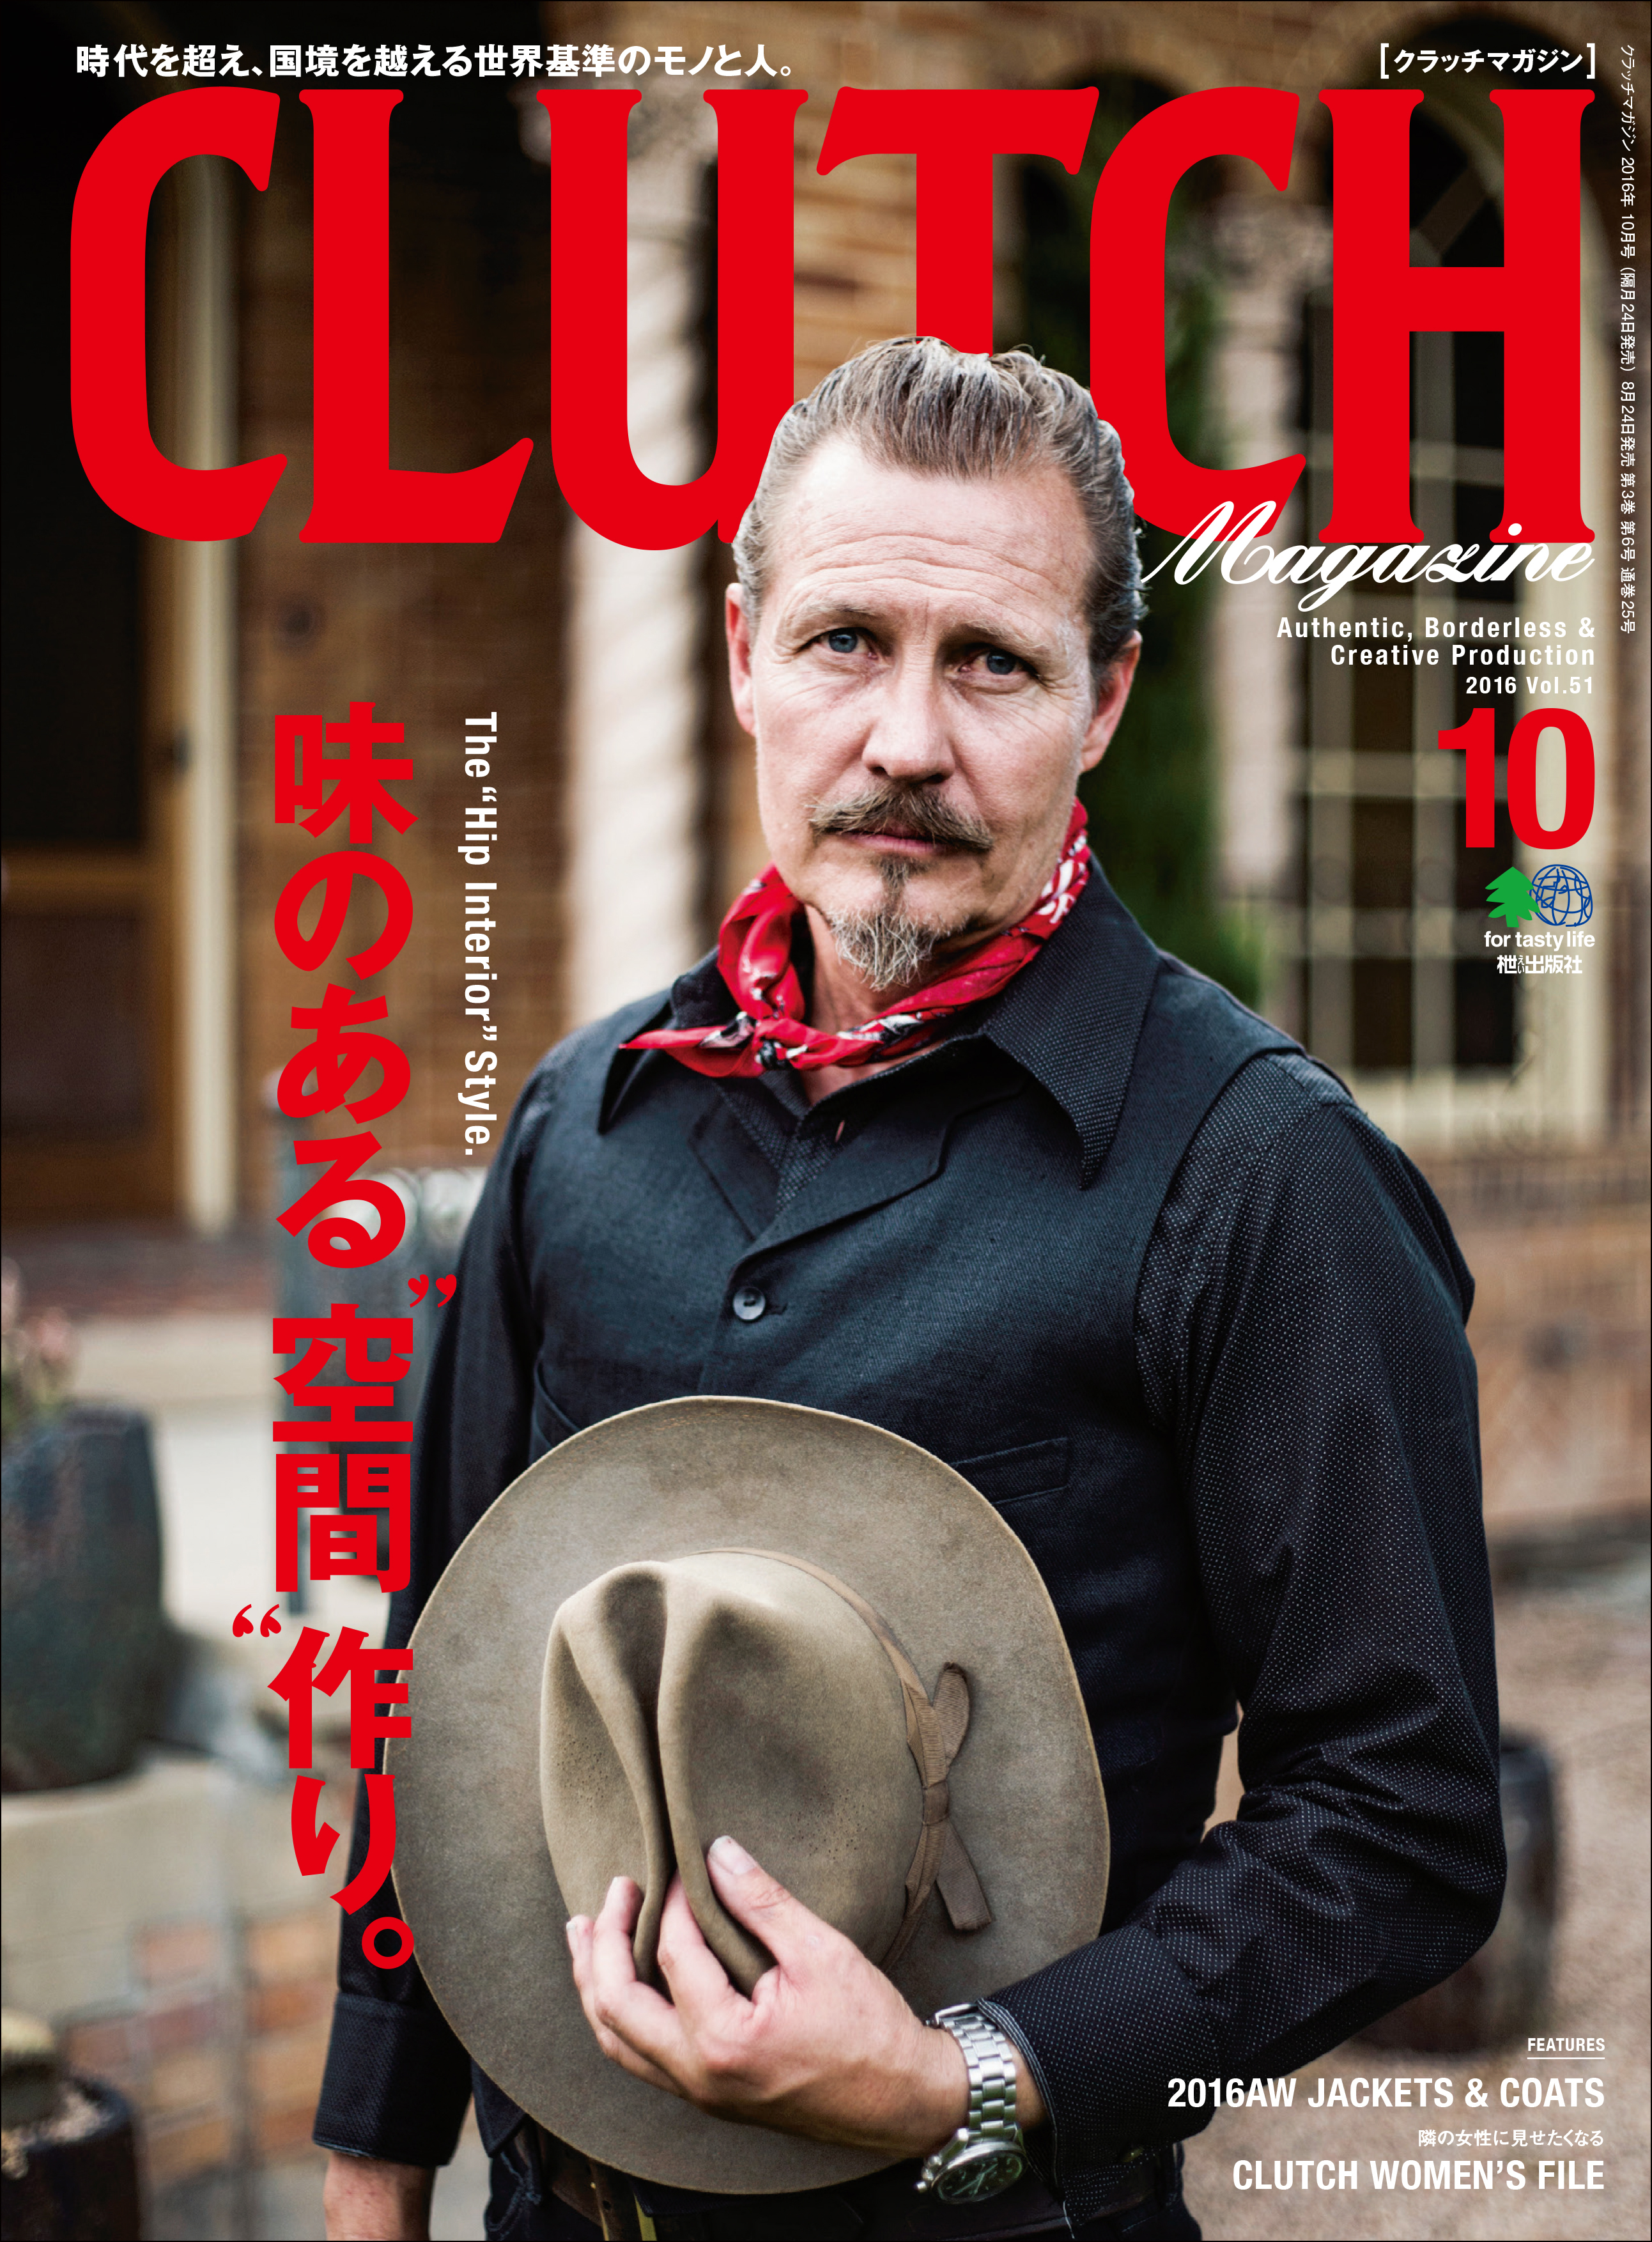 CLUTCH Magazine Vol.51 - CLUTCH Magazine編集部 - 漫画・ラノベ